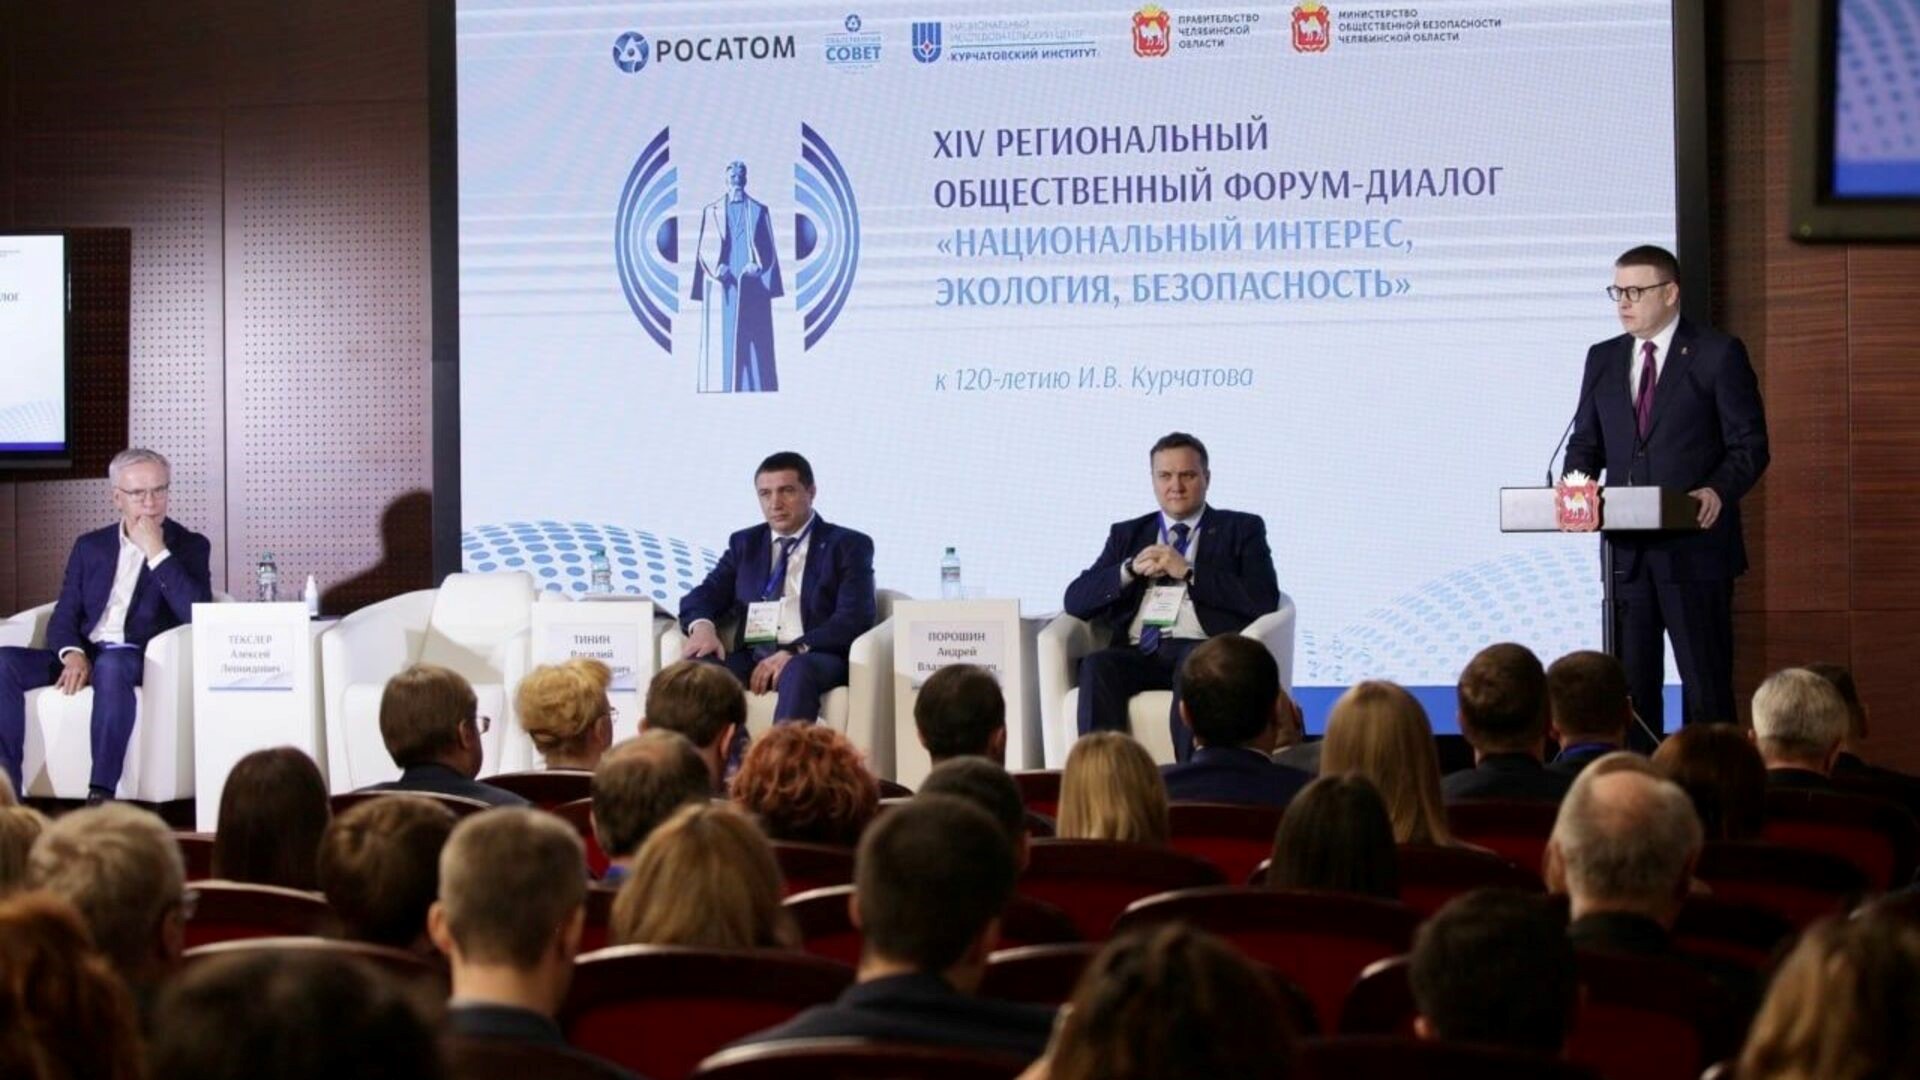 В столице Южного Урала завершился 14-й региональный форум-диалог «Национальный интерес, экология, безопасность» 